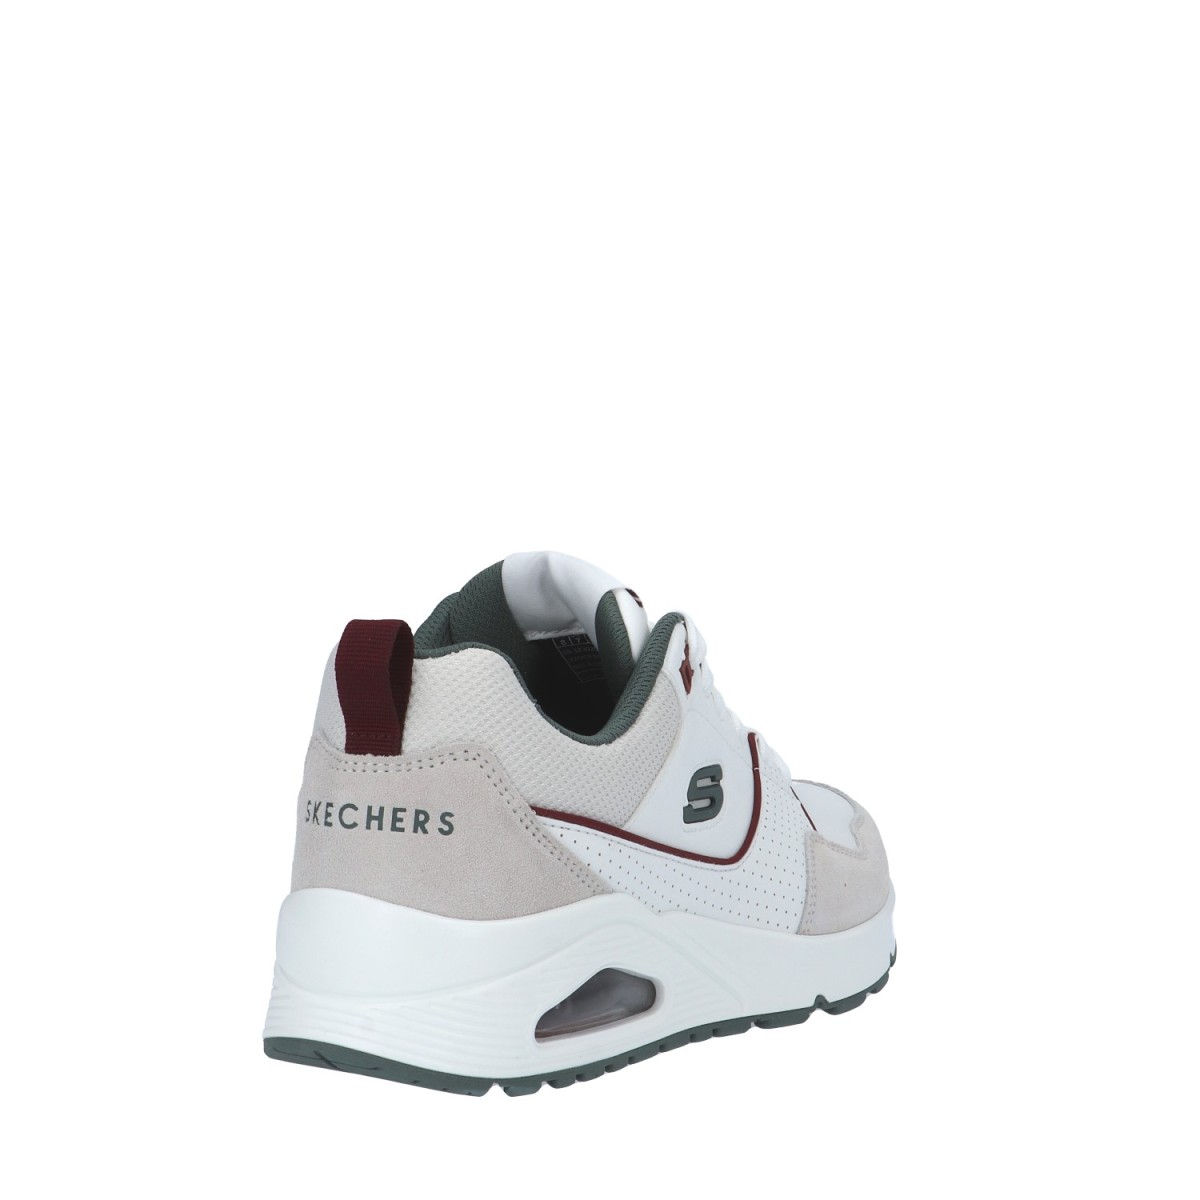 Skechers Sneaker Bianco/verde Gomma 183020